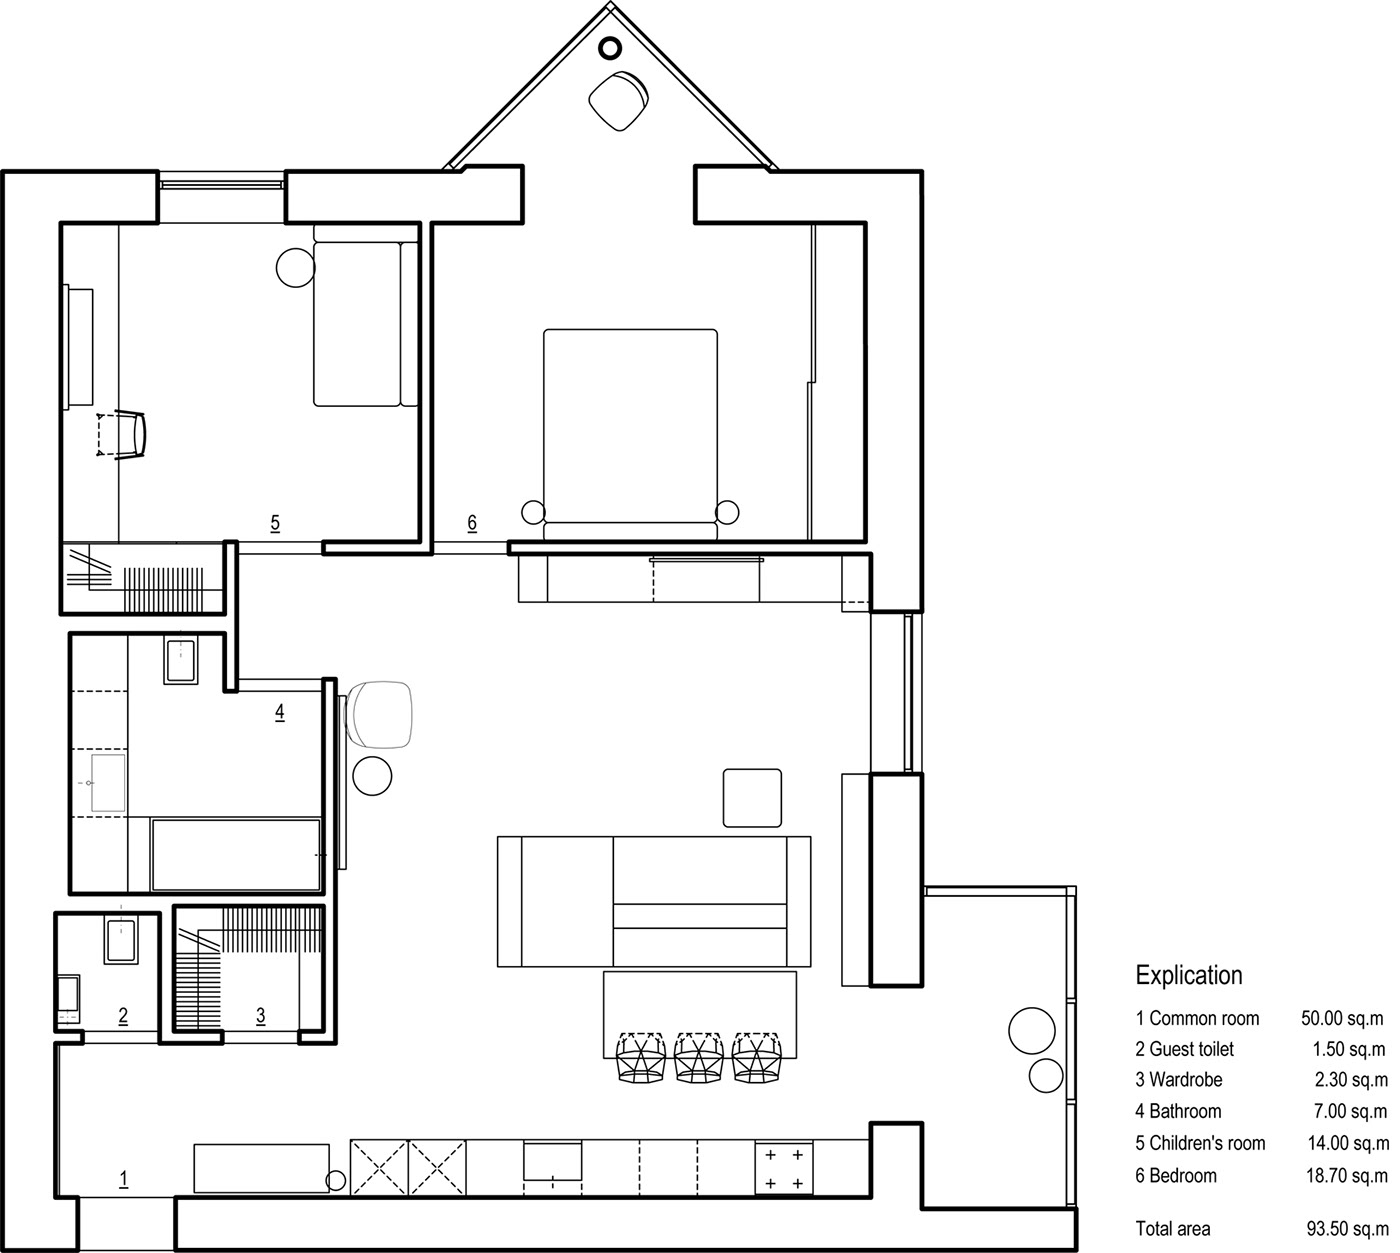 Interior interiordesign architecture apartment design дизайнинтерьера   архитектура интерьер